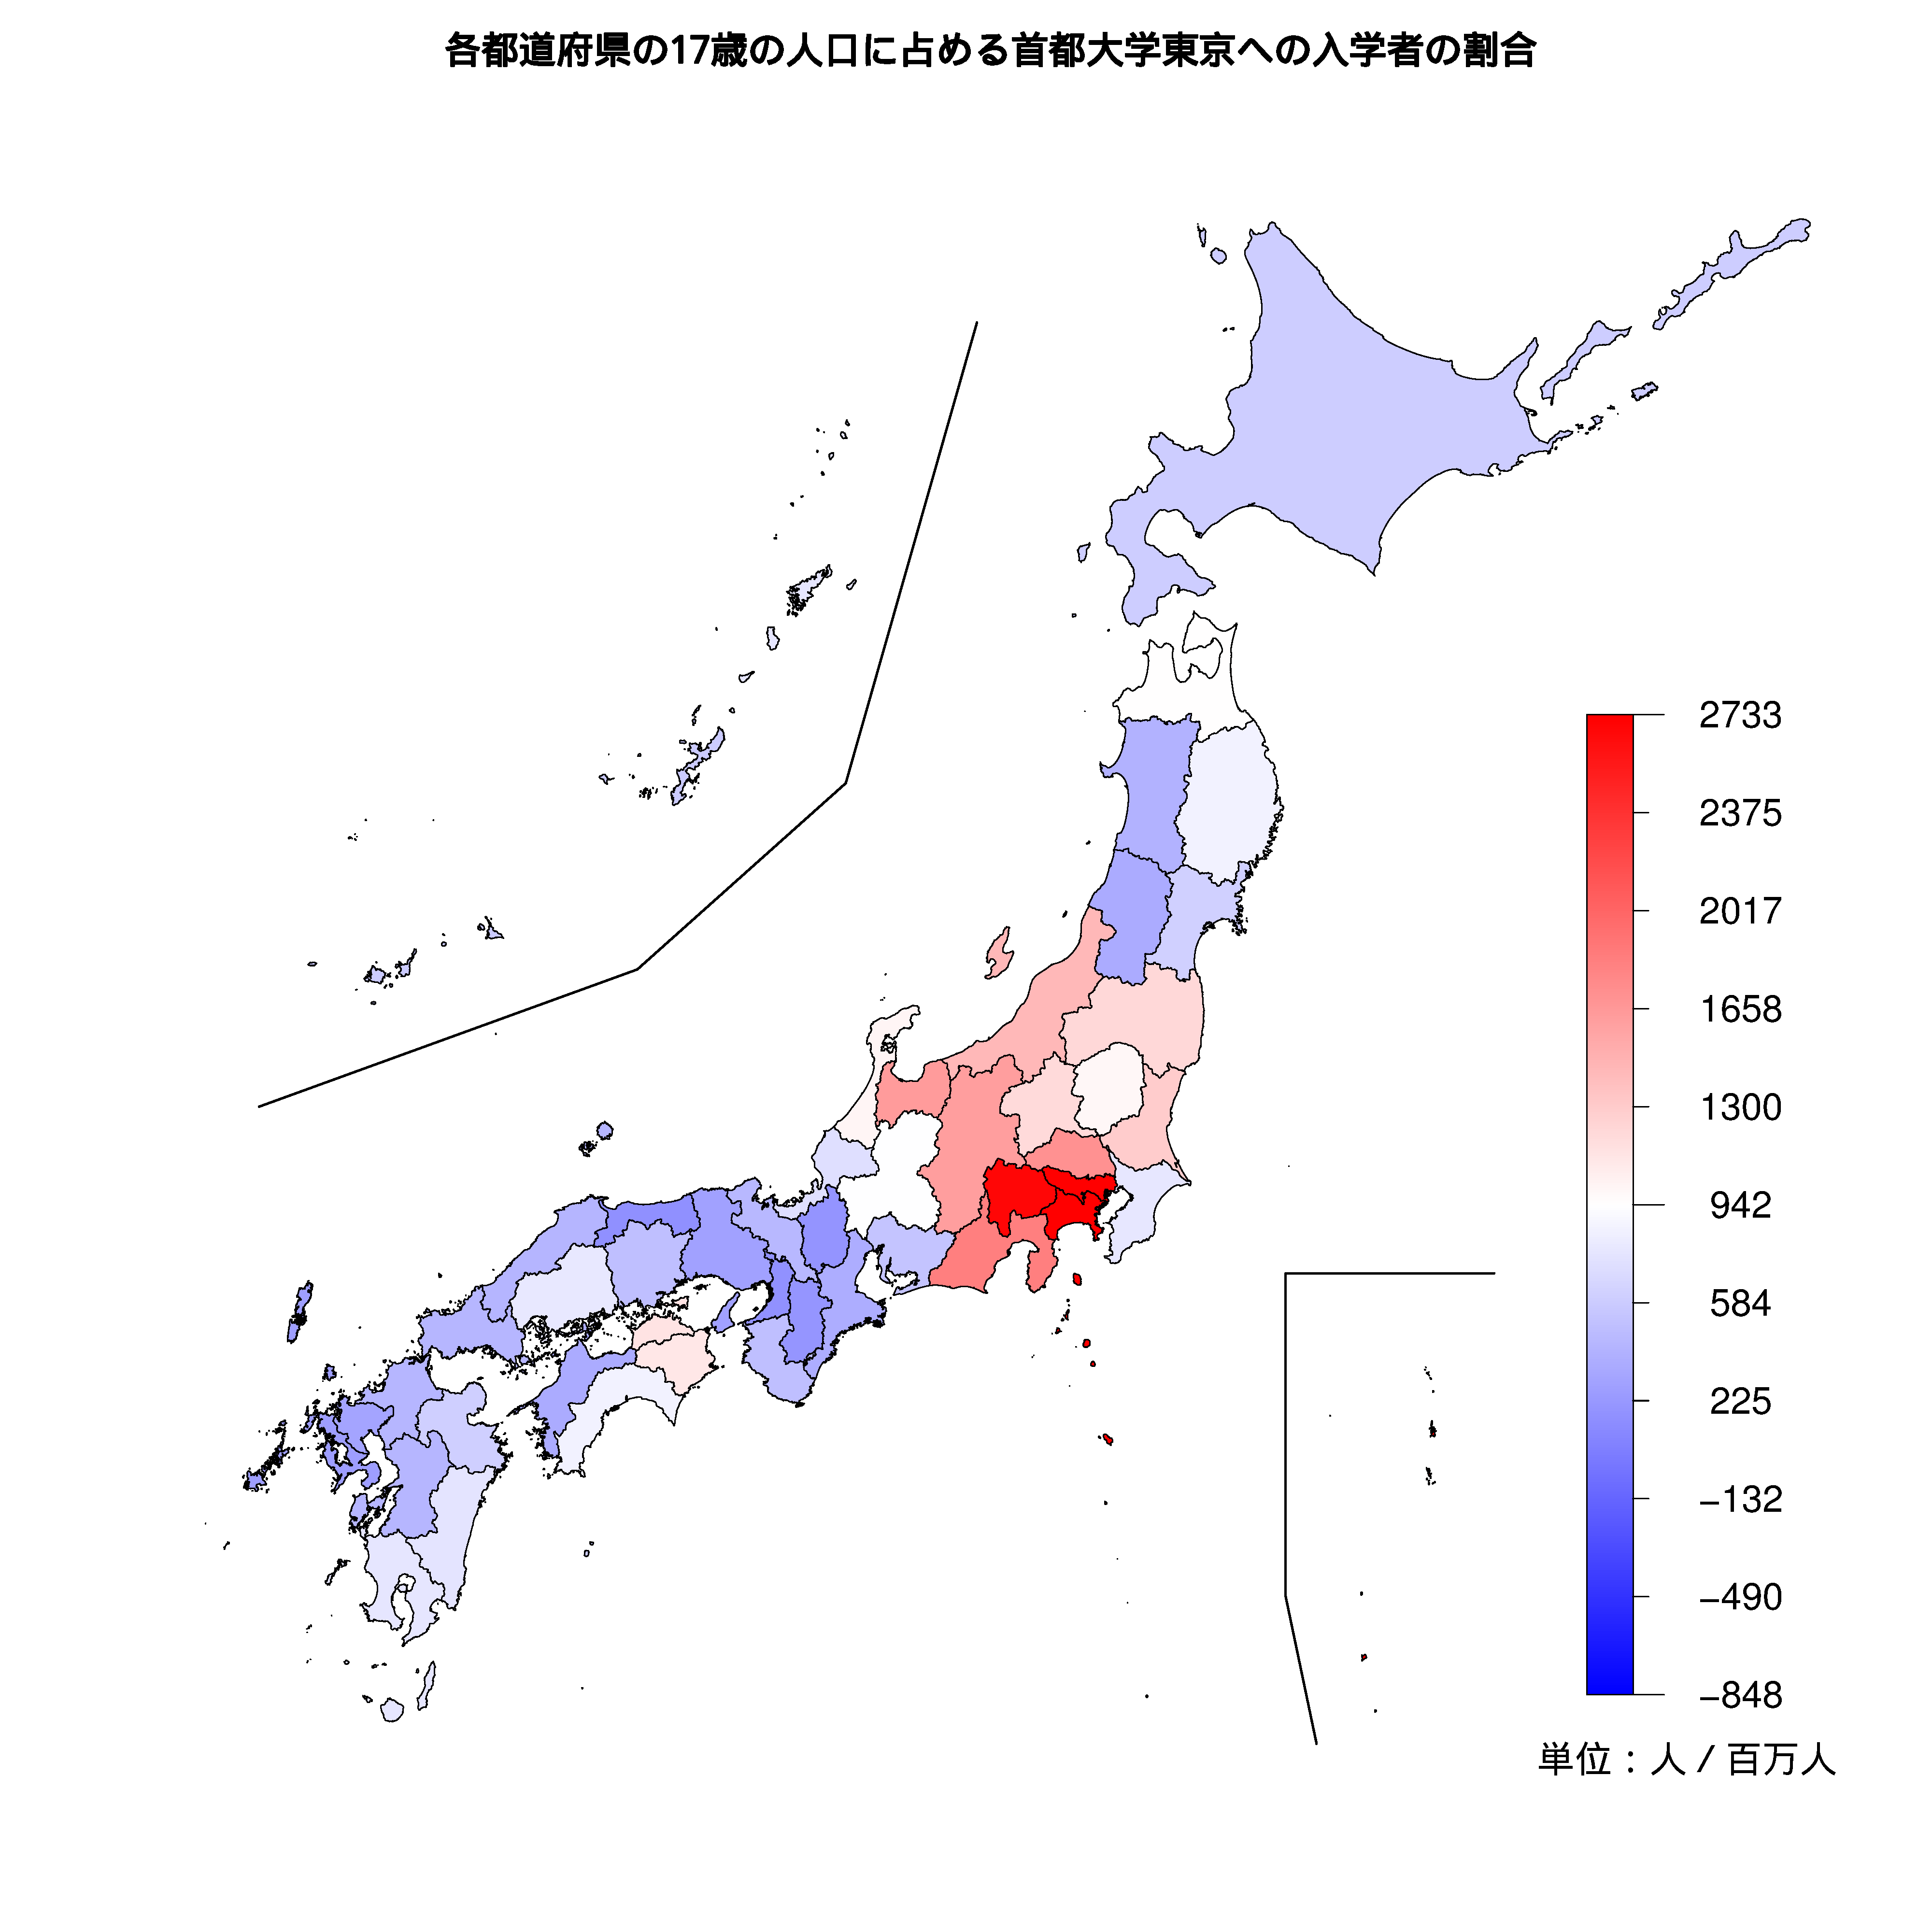 首都大学東京への入学者が多い都道府県の色分け地図